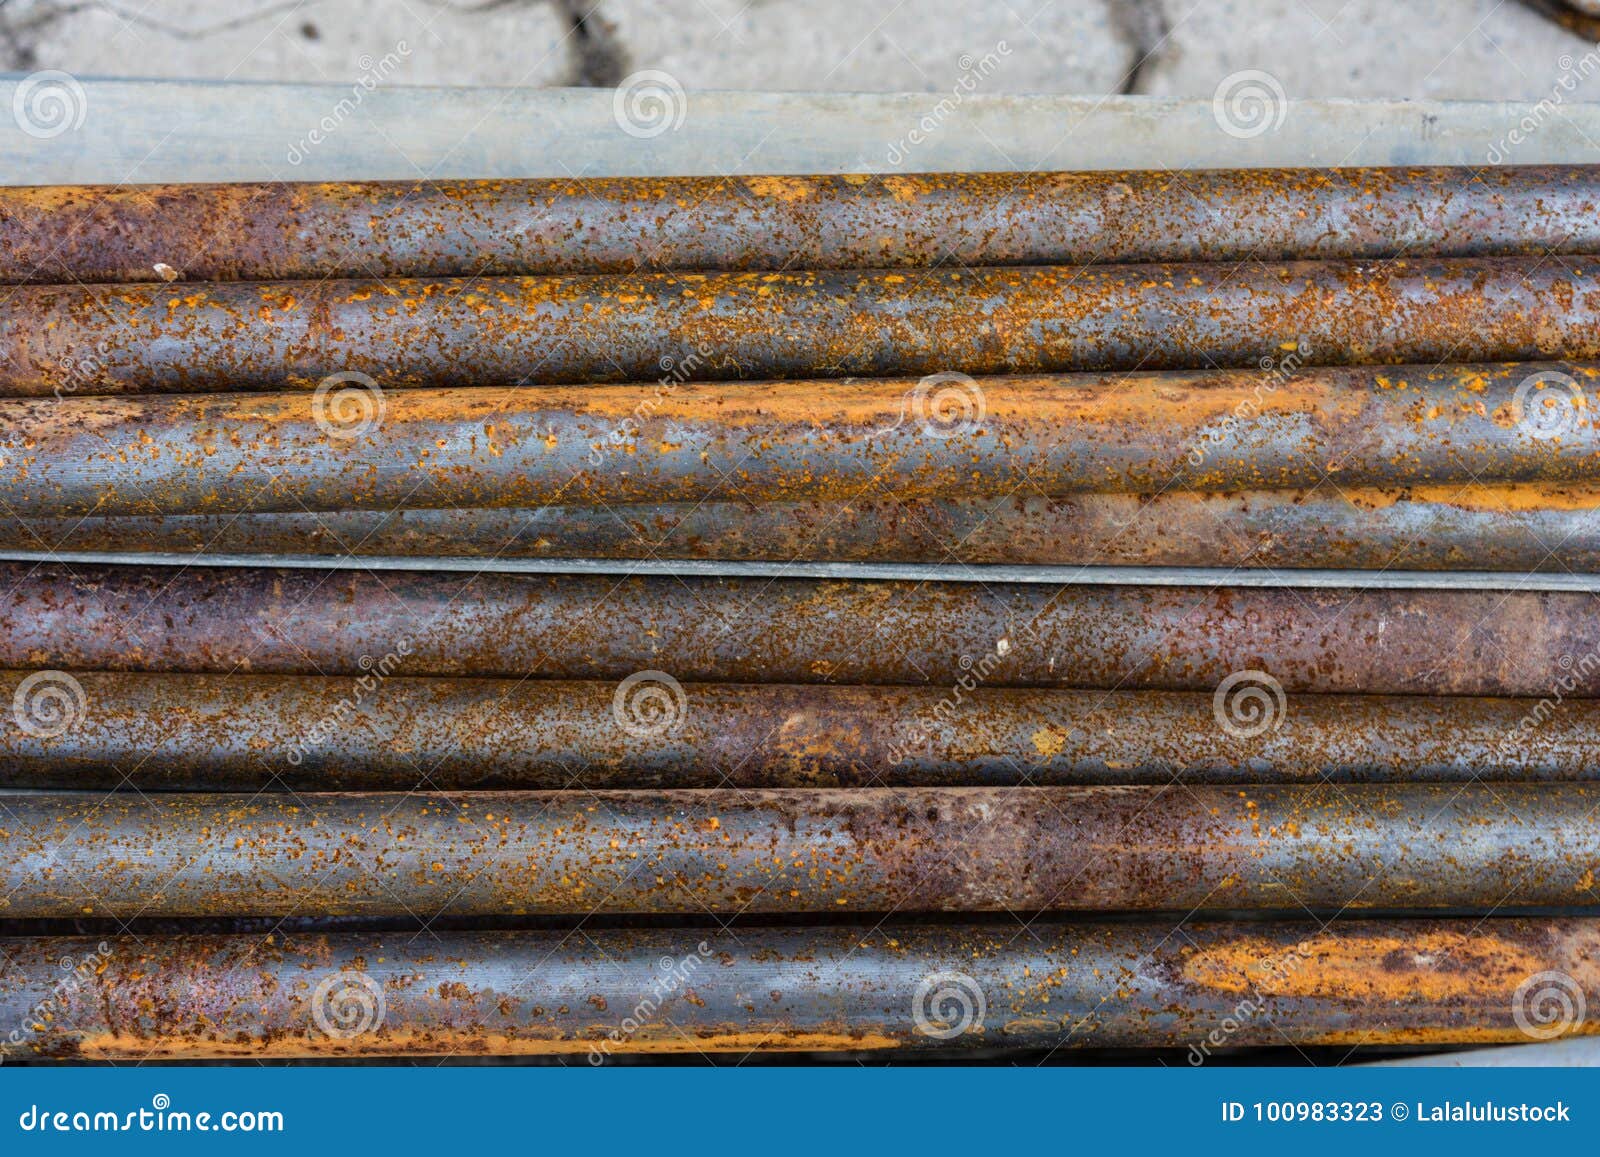 Metal pipe rust фото 80